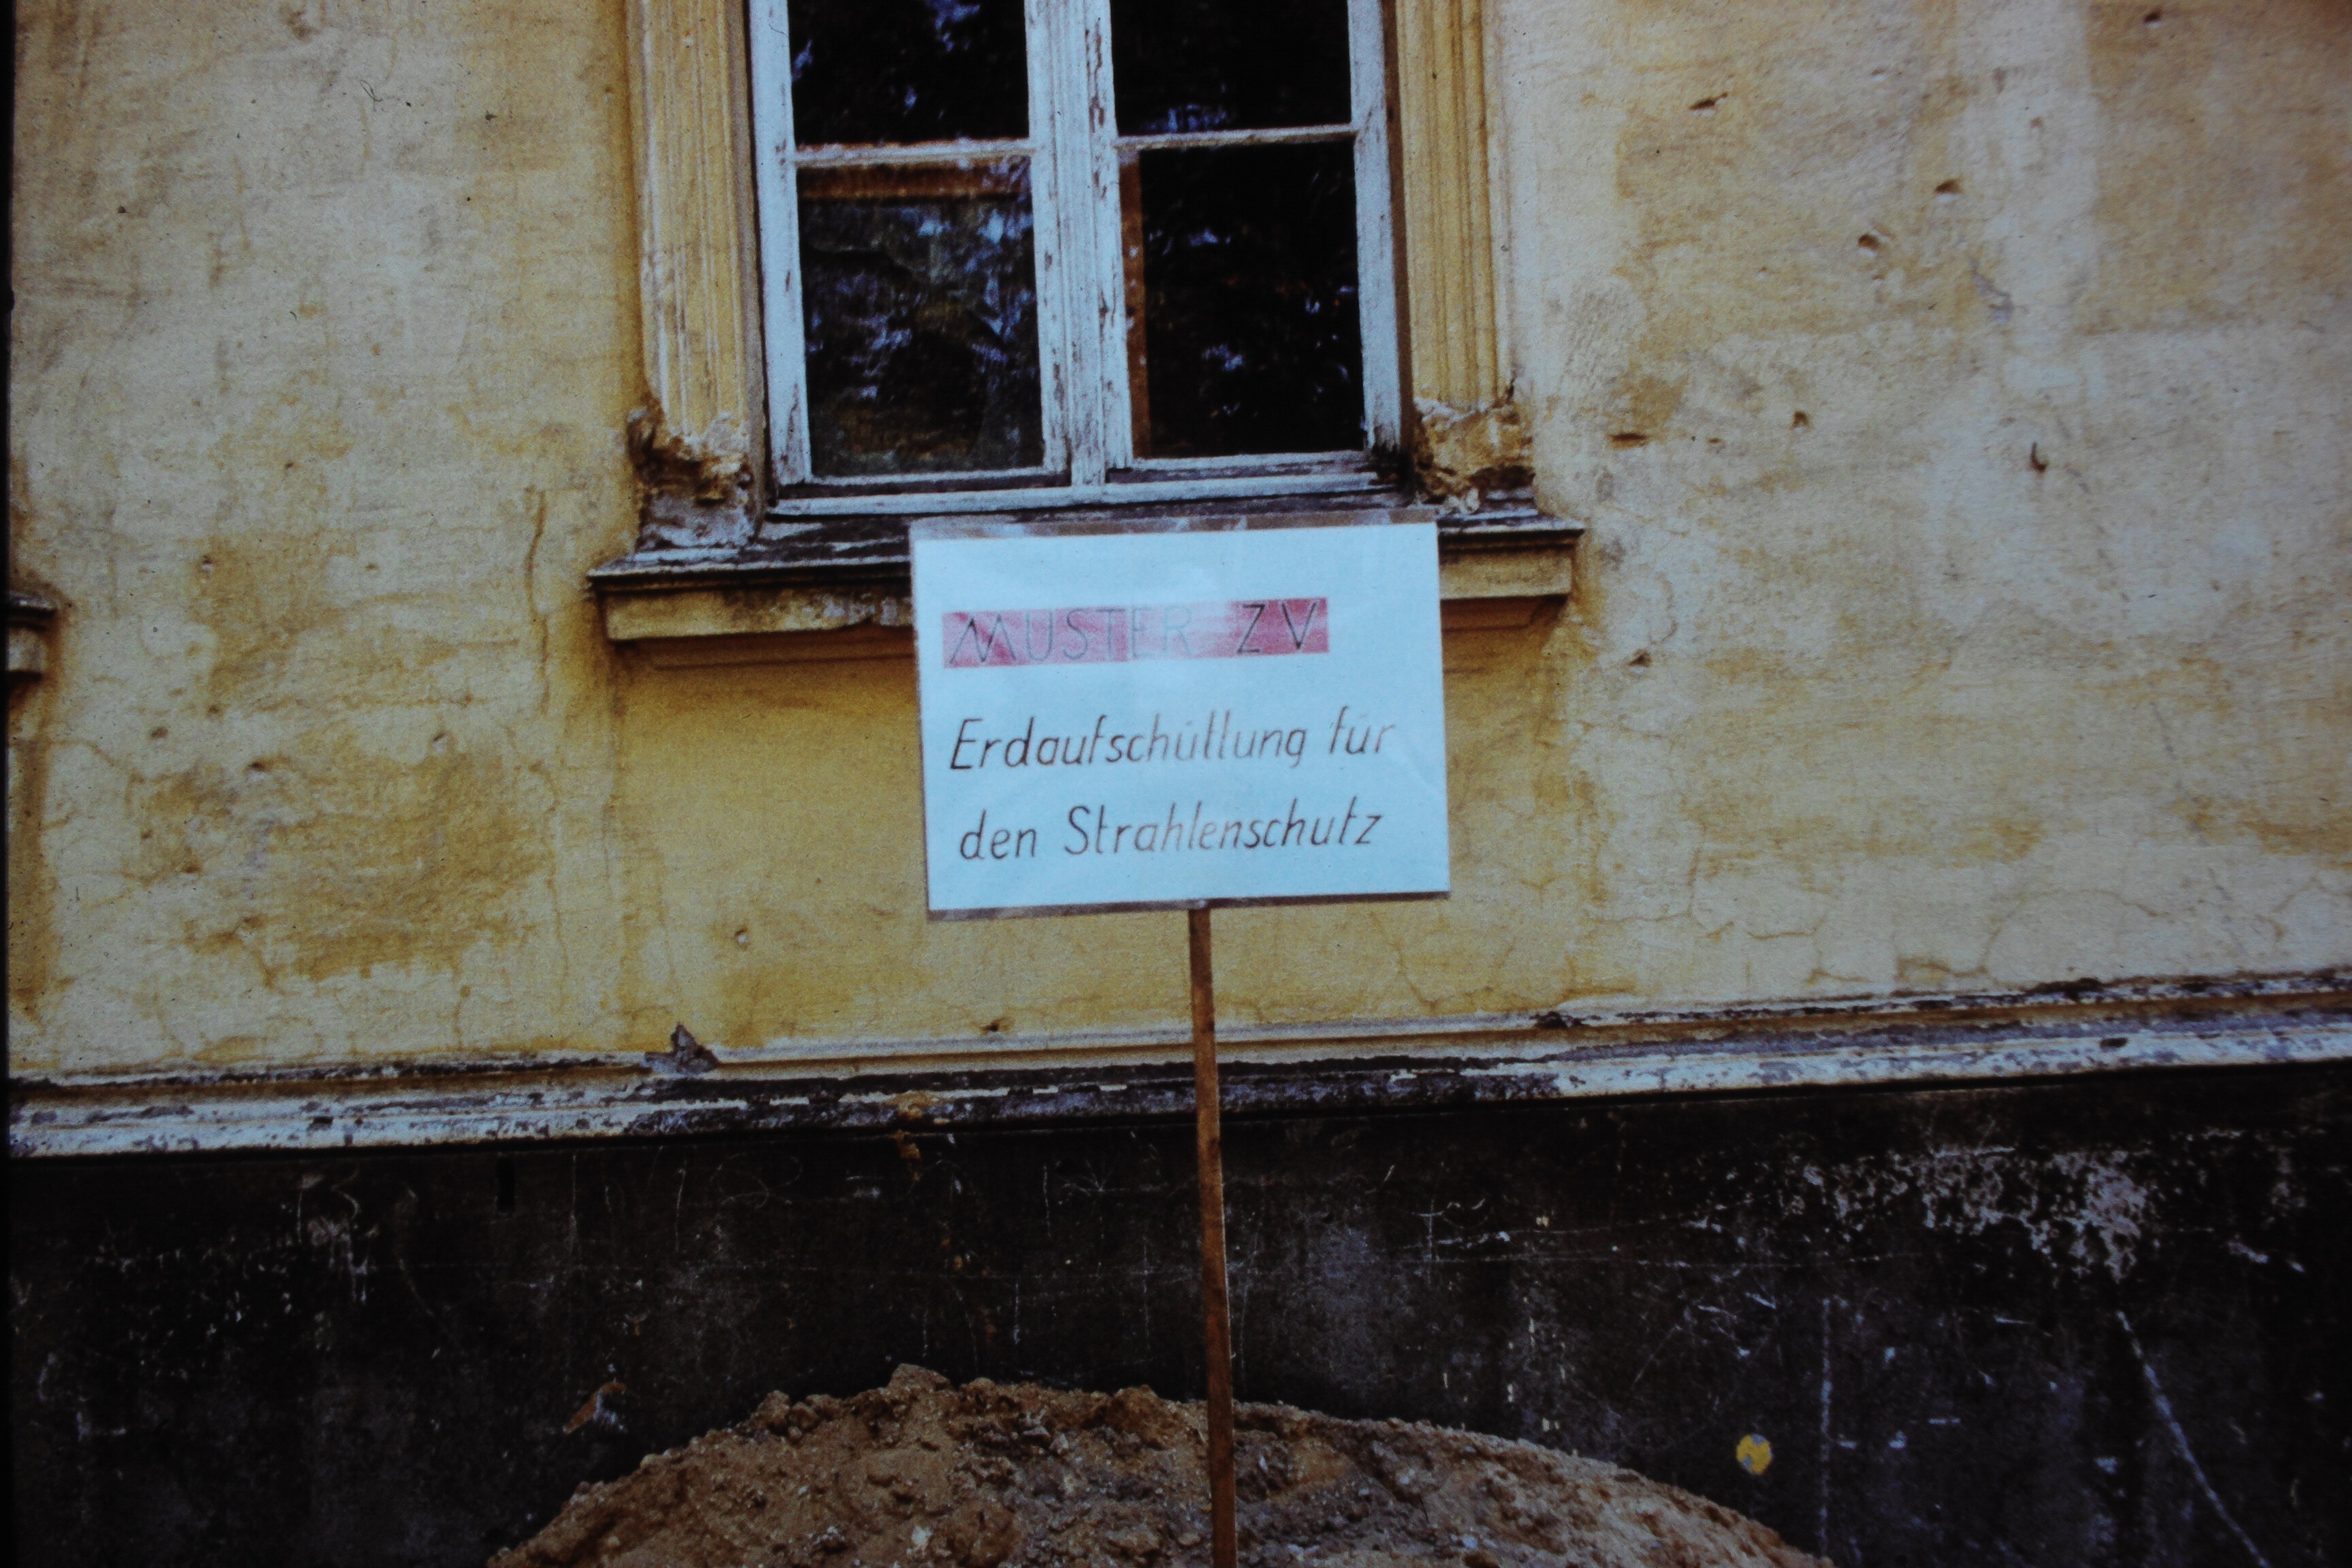 Atomschlagübung "Dosse 83": Schild "Muster ZV Erdaufschüttung für den Strahlenschutz" (DDR Geschichtsmuseum im Dokumentationszentrum Perleberg CC BY-SA)